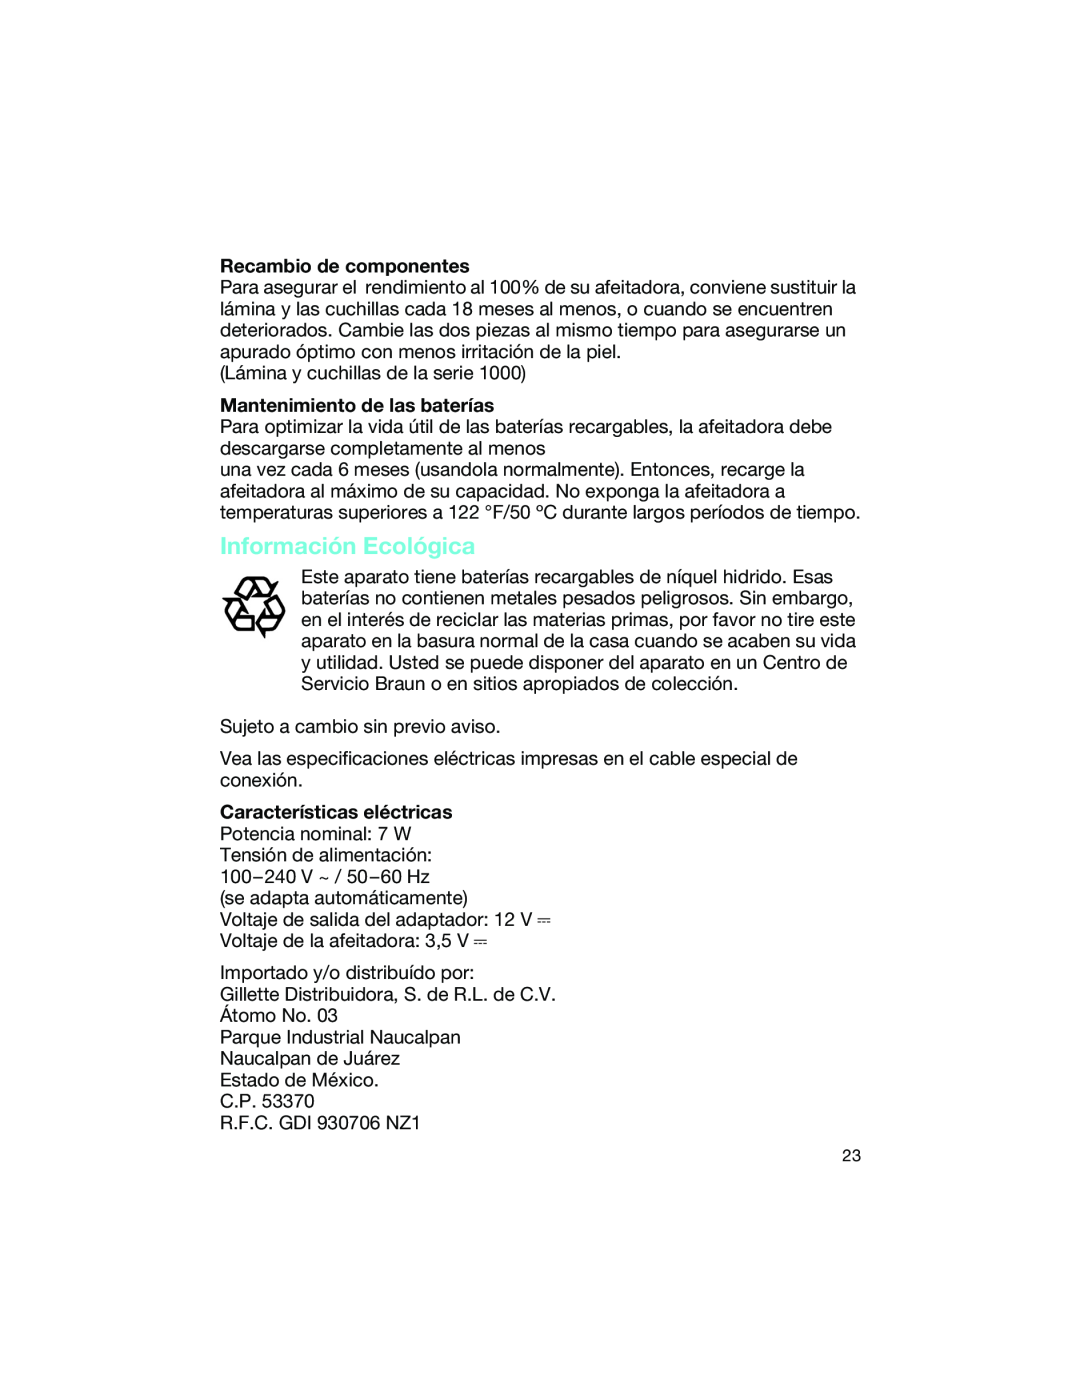 Braun 1775 manual Información Ecológica, Recambio de componentes, Mantenimiento de las baterías 